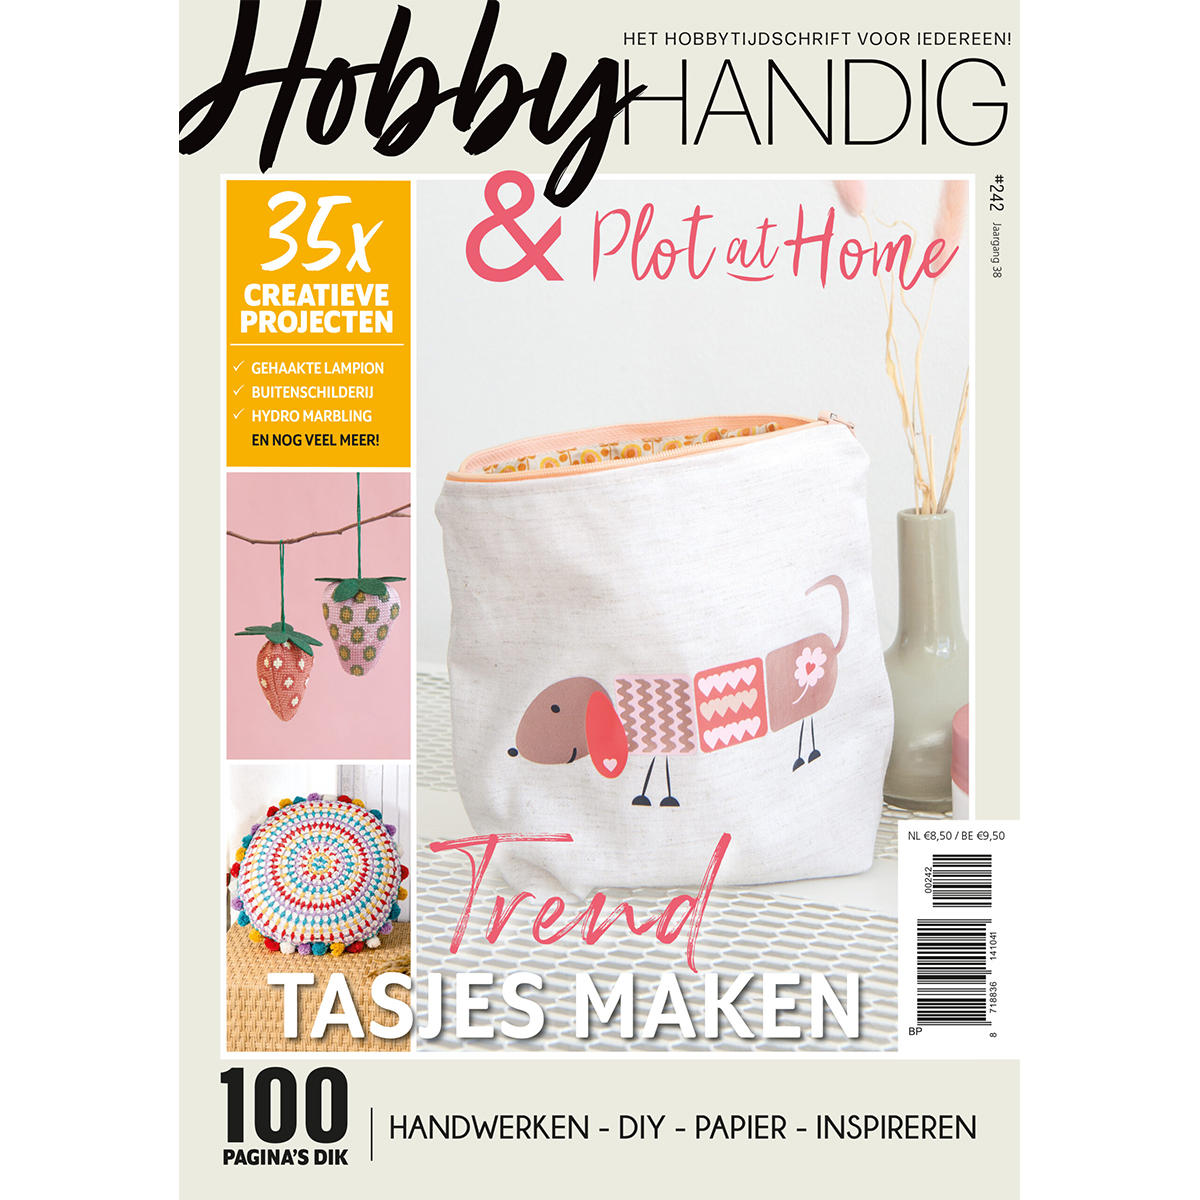 Plotterie.nl-hobbyhandig242